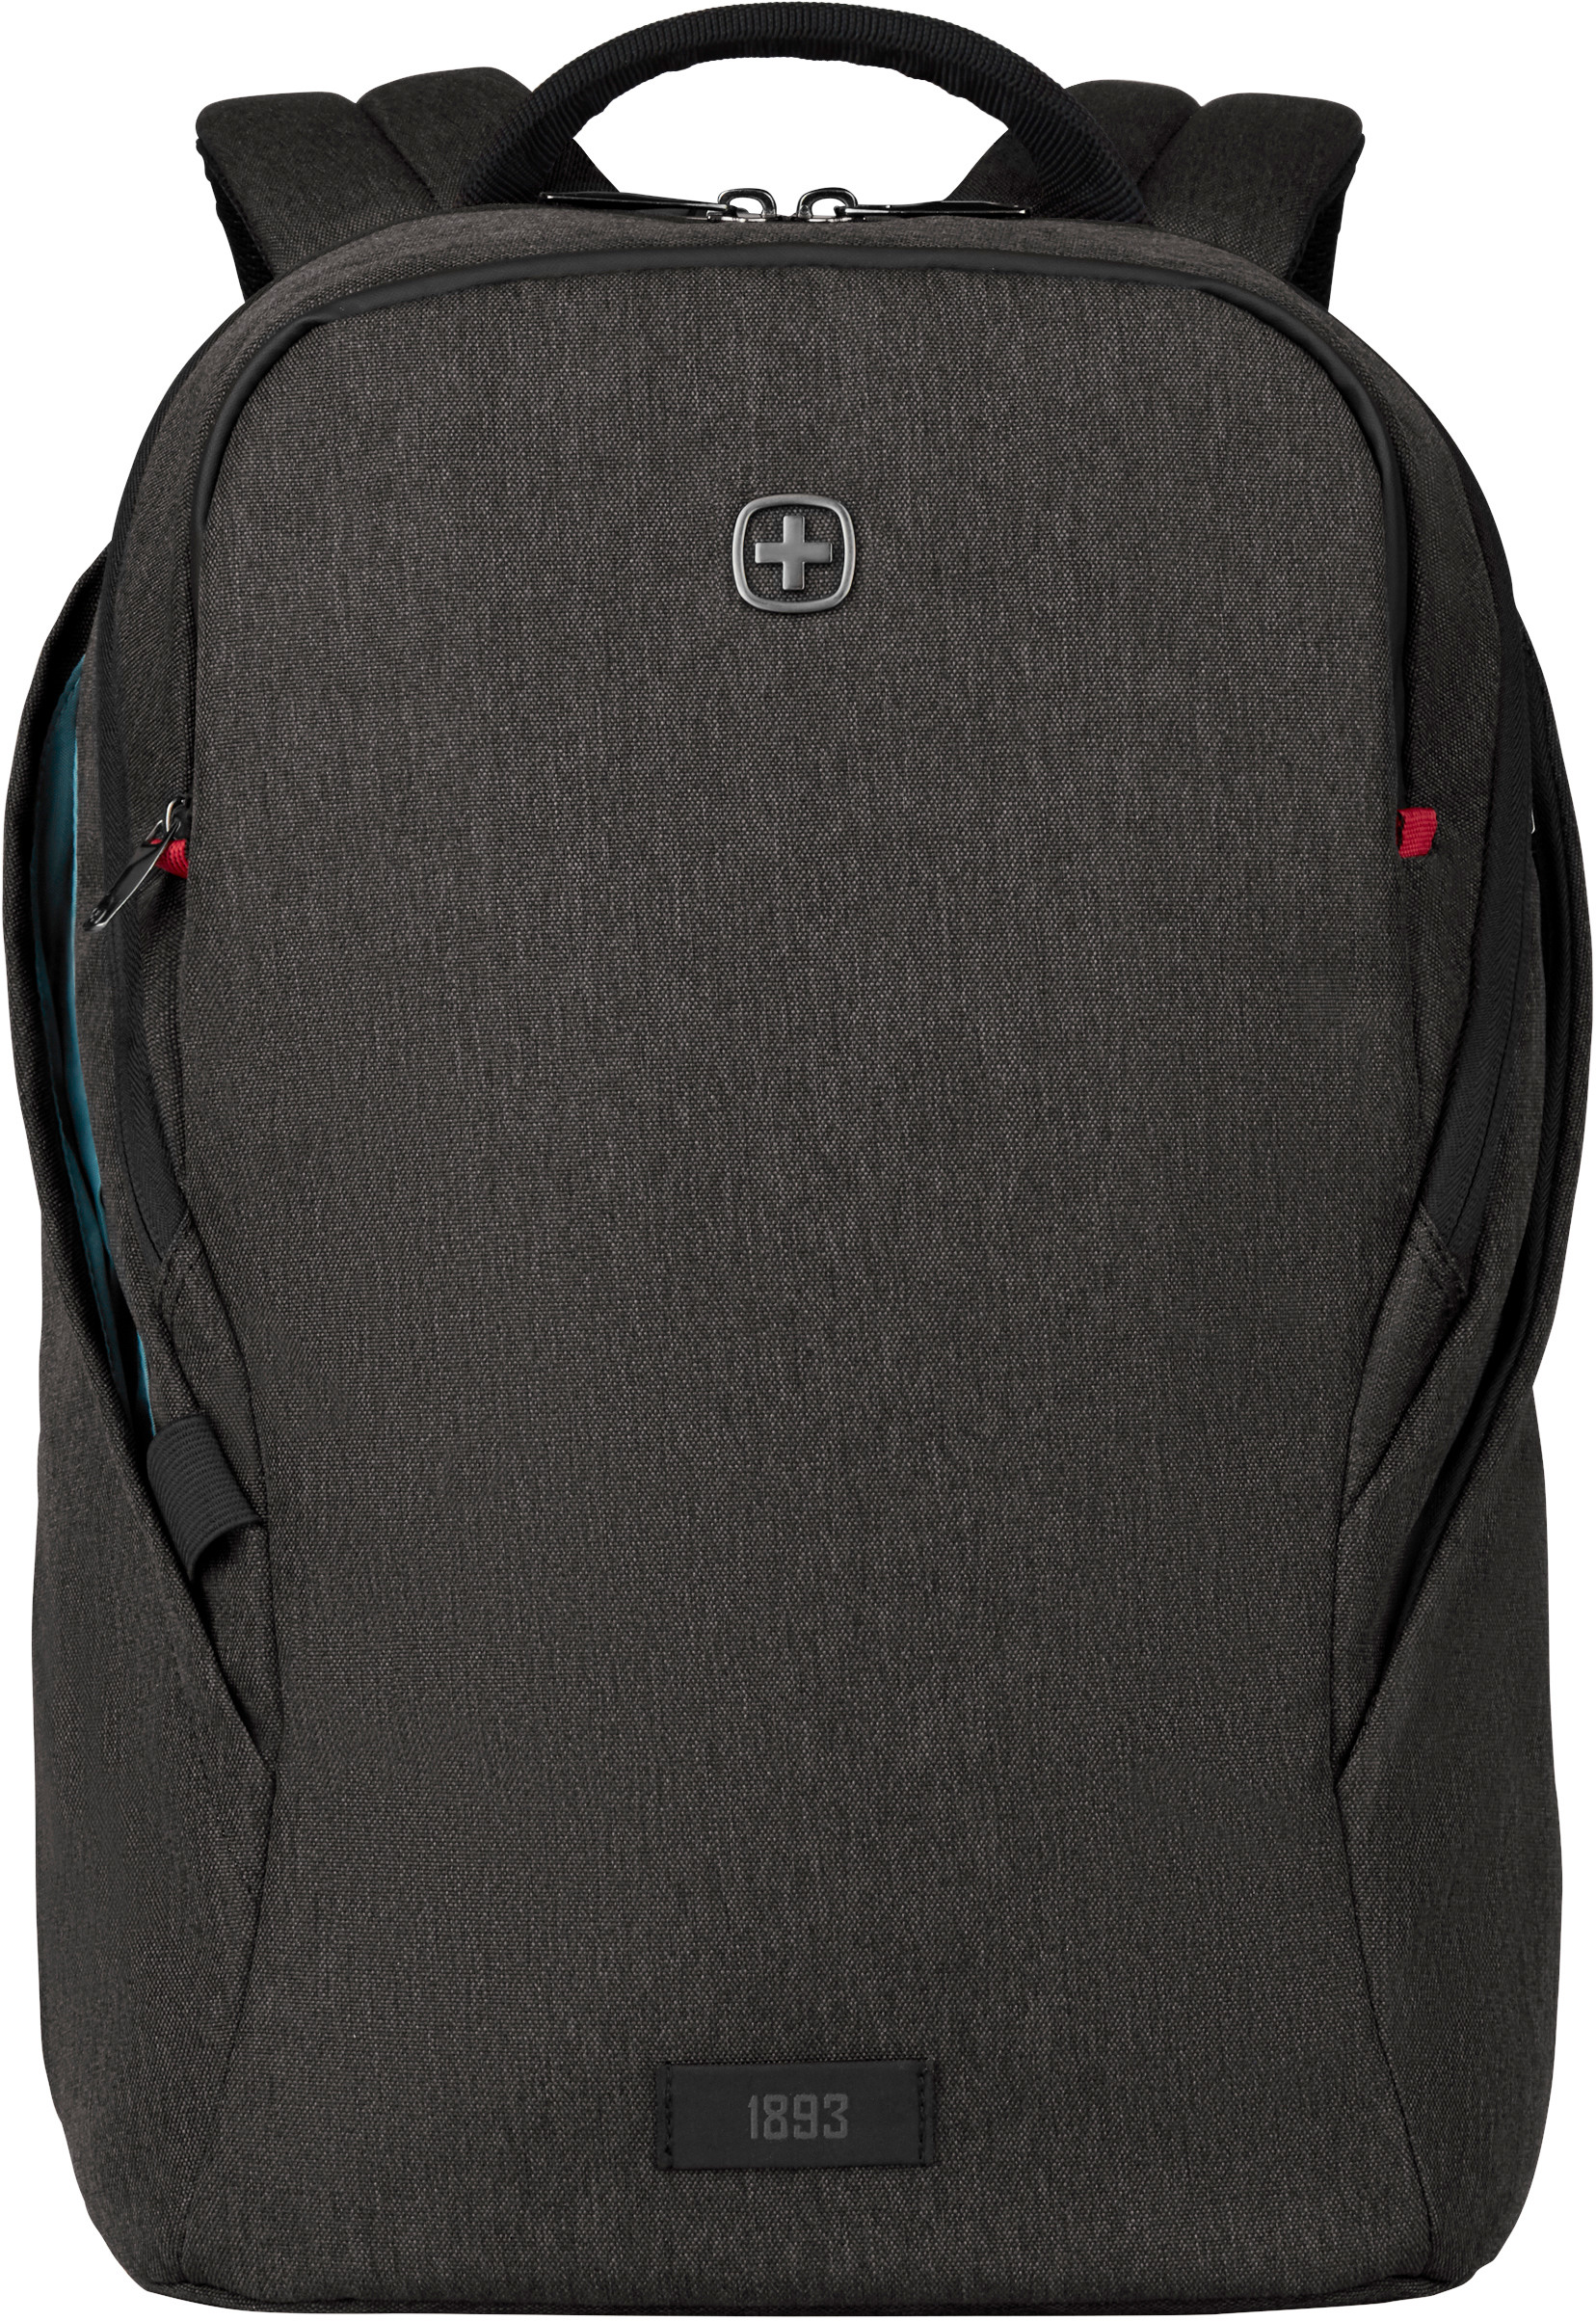 WENGER MX Light 16 inch 611642 Laptop Backpack